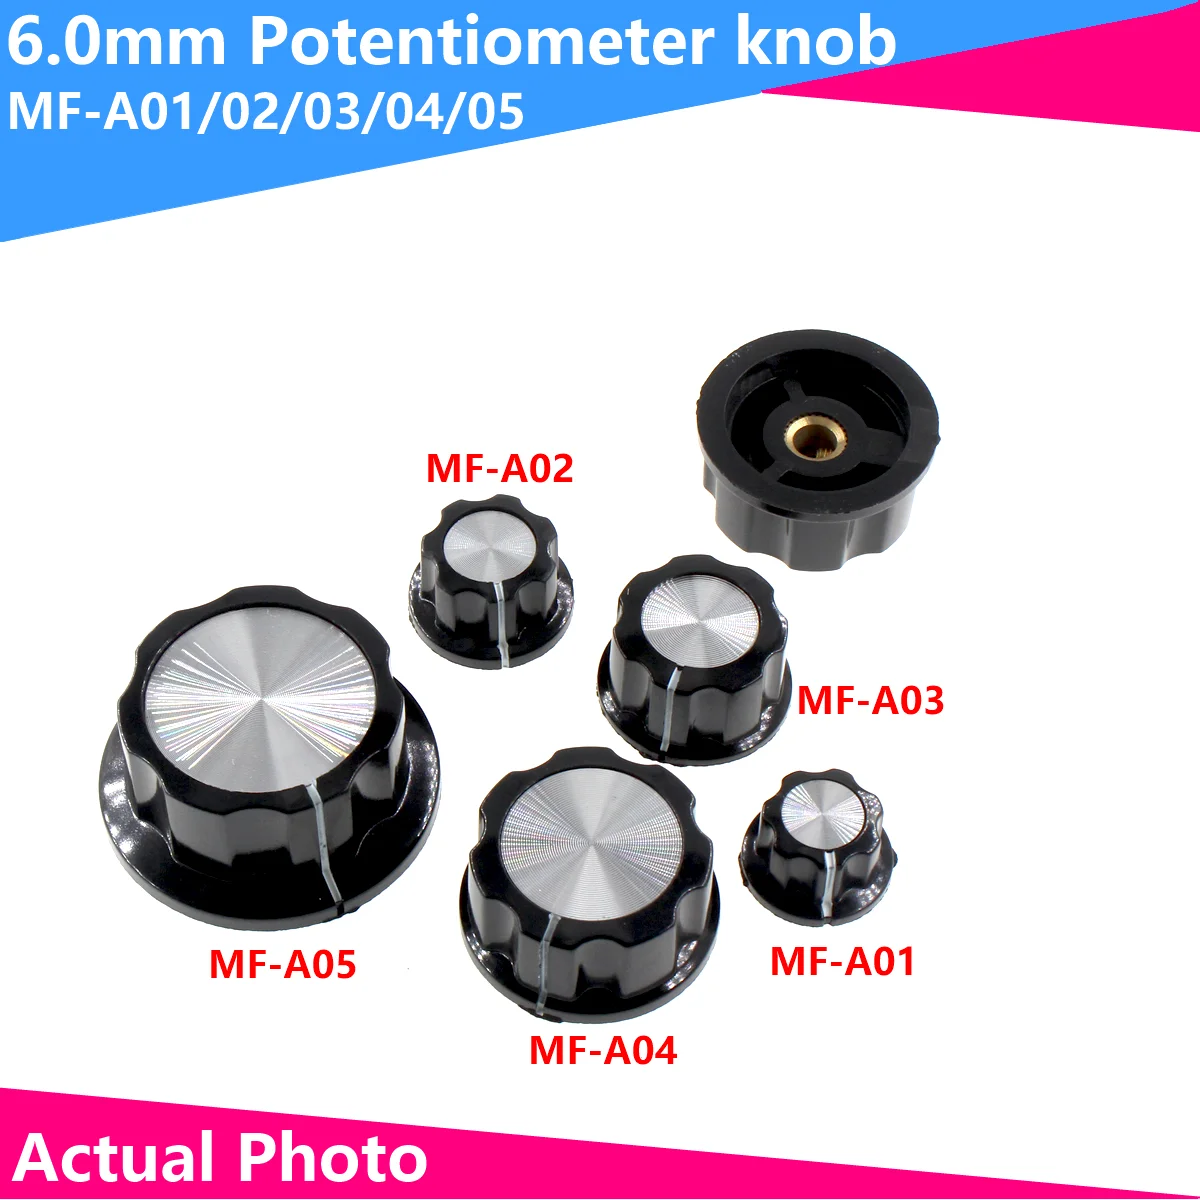 5pcs MF-A01/A02/A03/A04/A05 Potentiometer knob bakelite potentiometer potentiometer knob cap diameter,inner bore:6mm